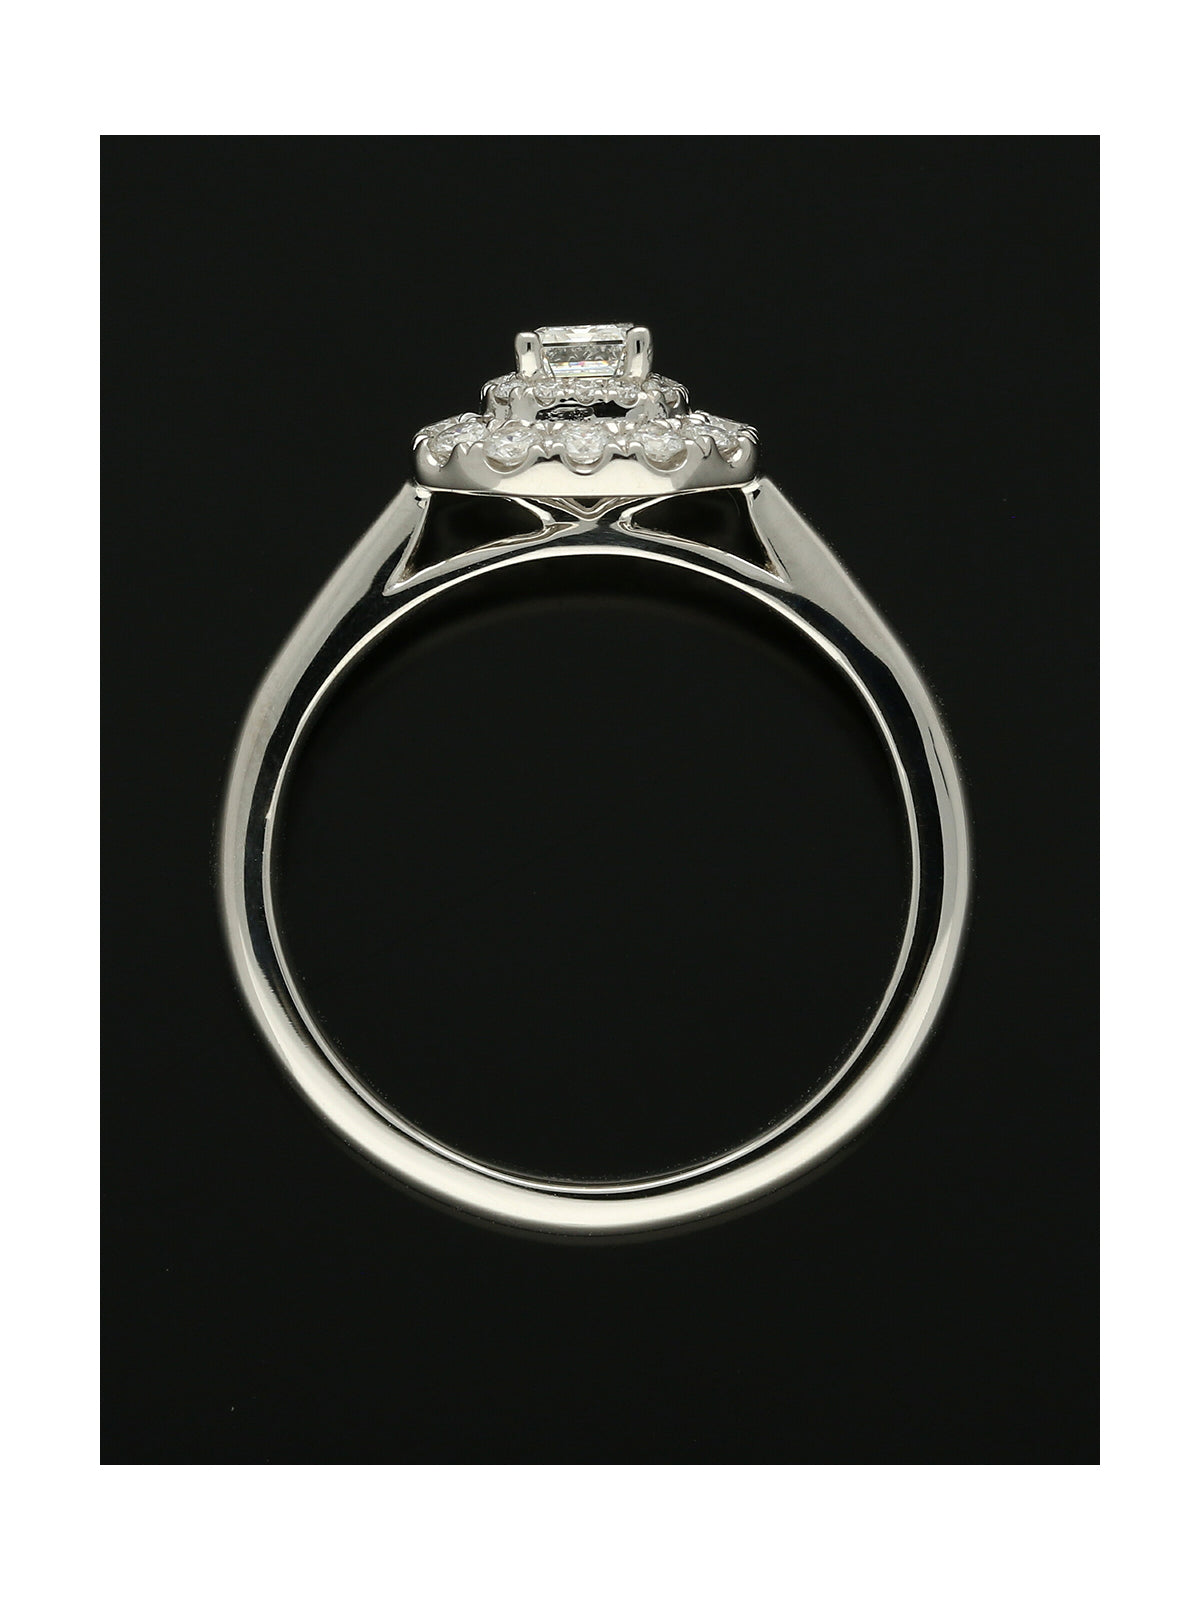 Diamond Cluster Ring Certificated 0.72ct Emerald & Round Brilliant Cut in Platinum